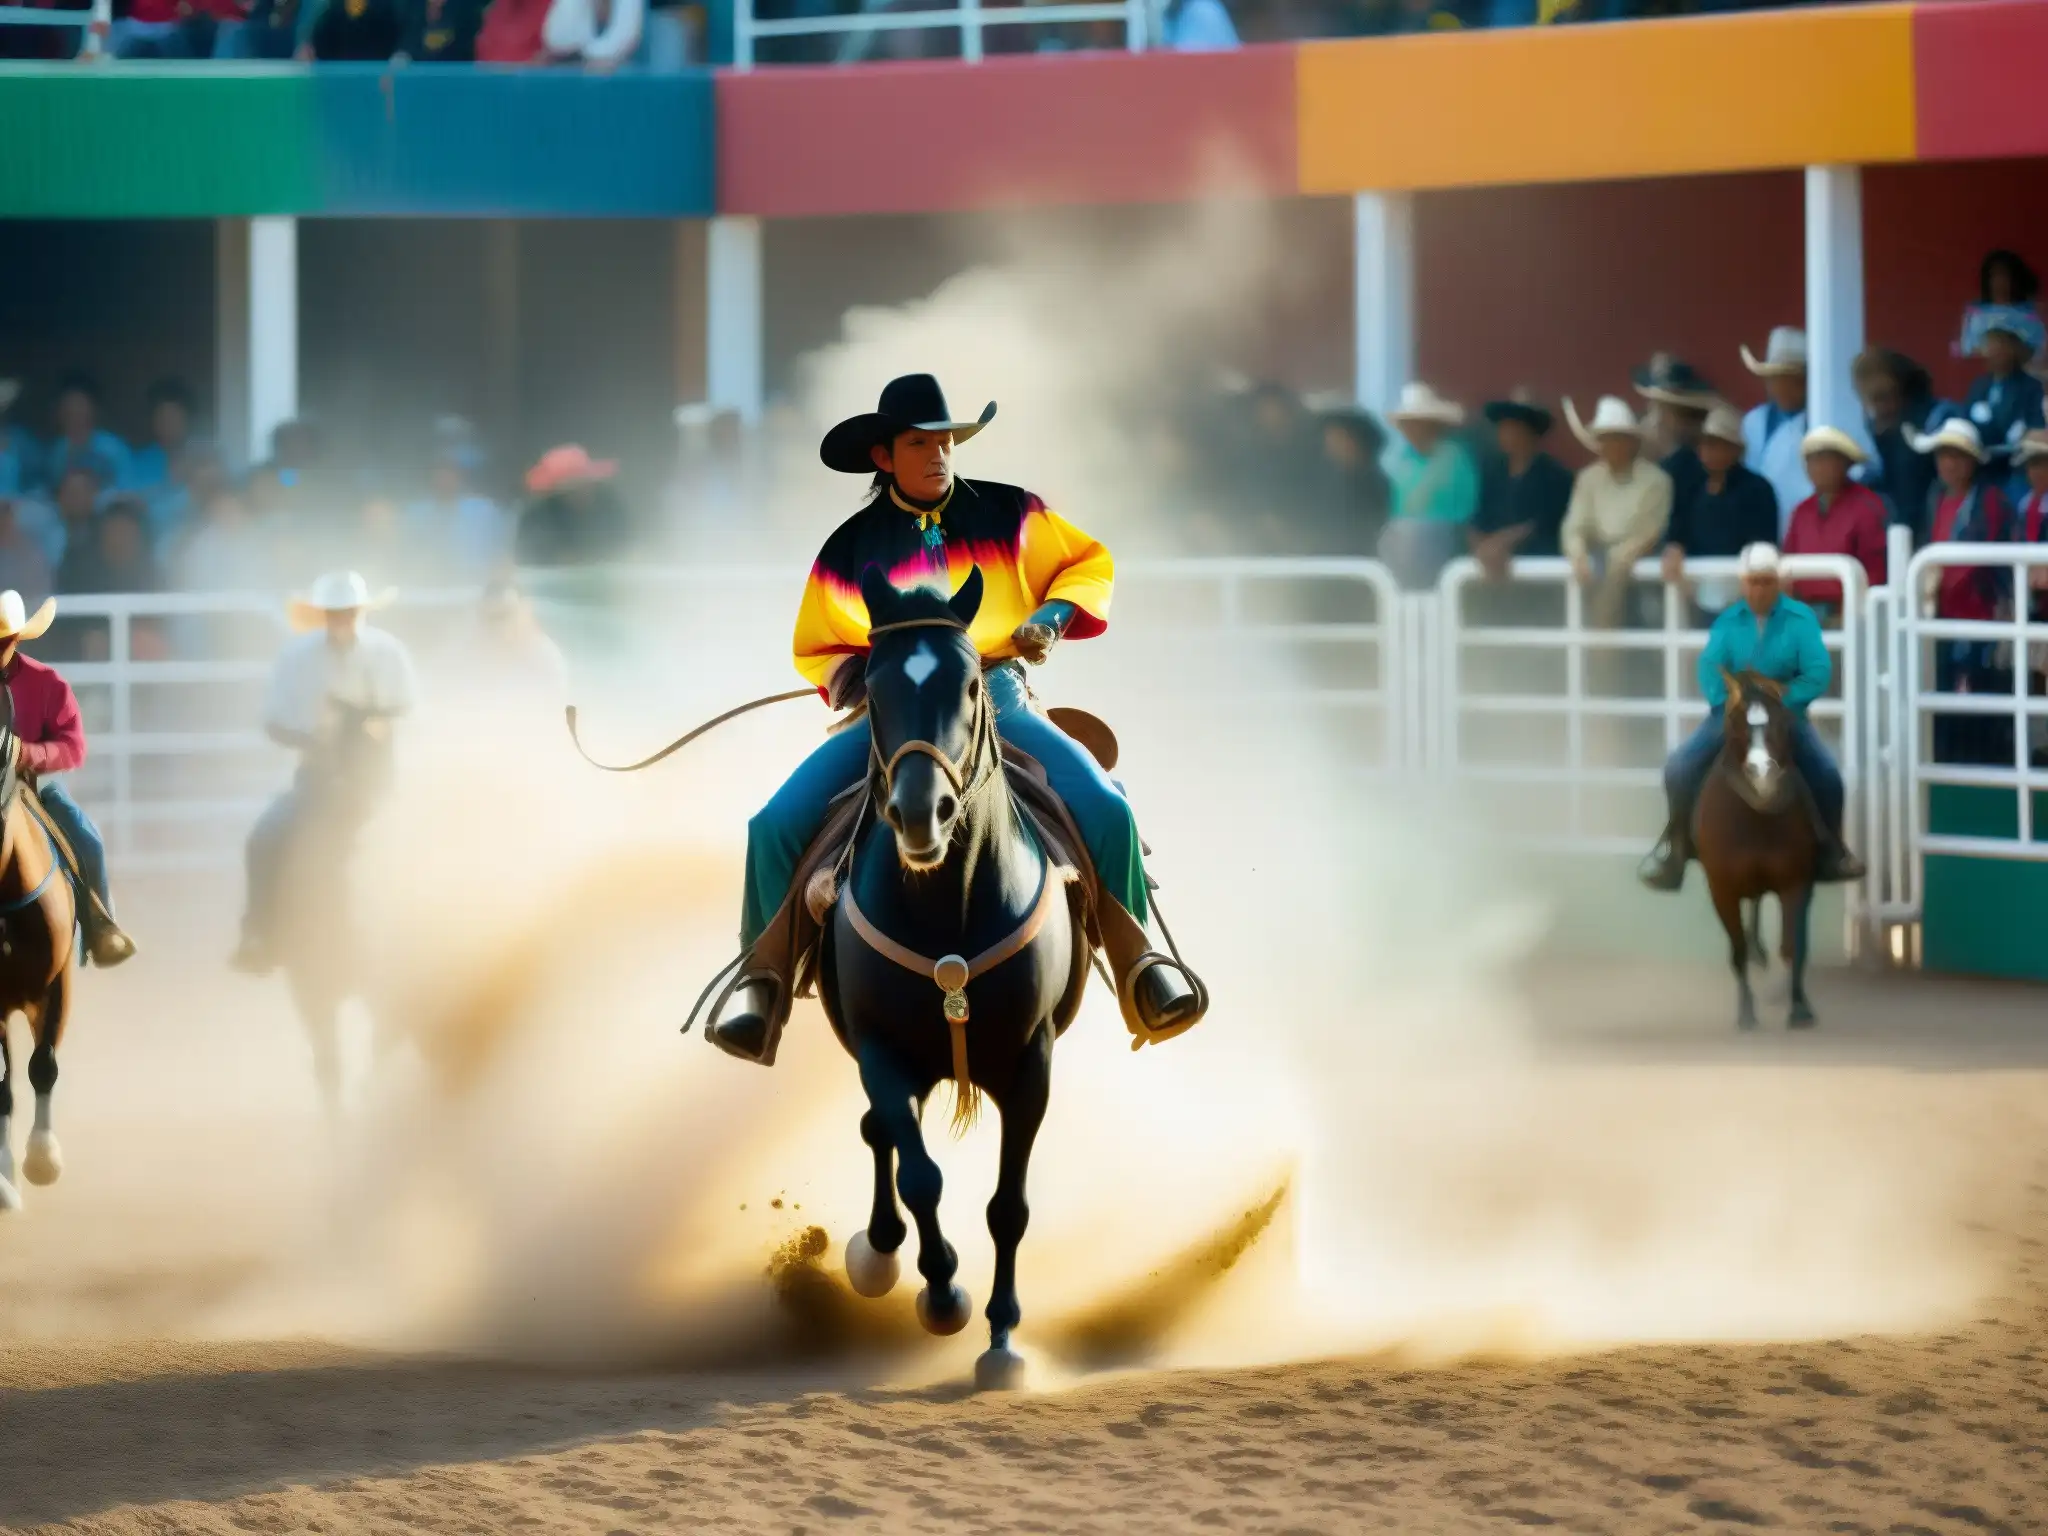 El misterioso Charro Negro en un rodeo tradicional mexicano rodeando un caballo negro, evocando el origen y significado del Charro Negro